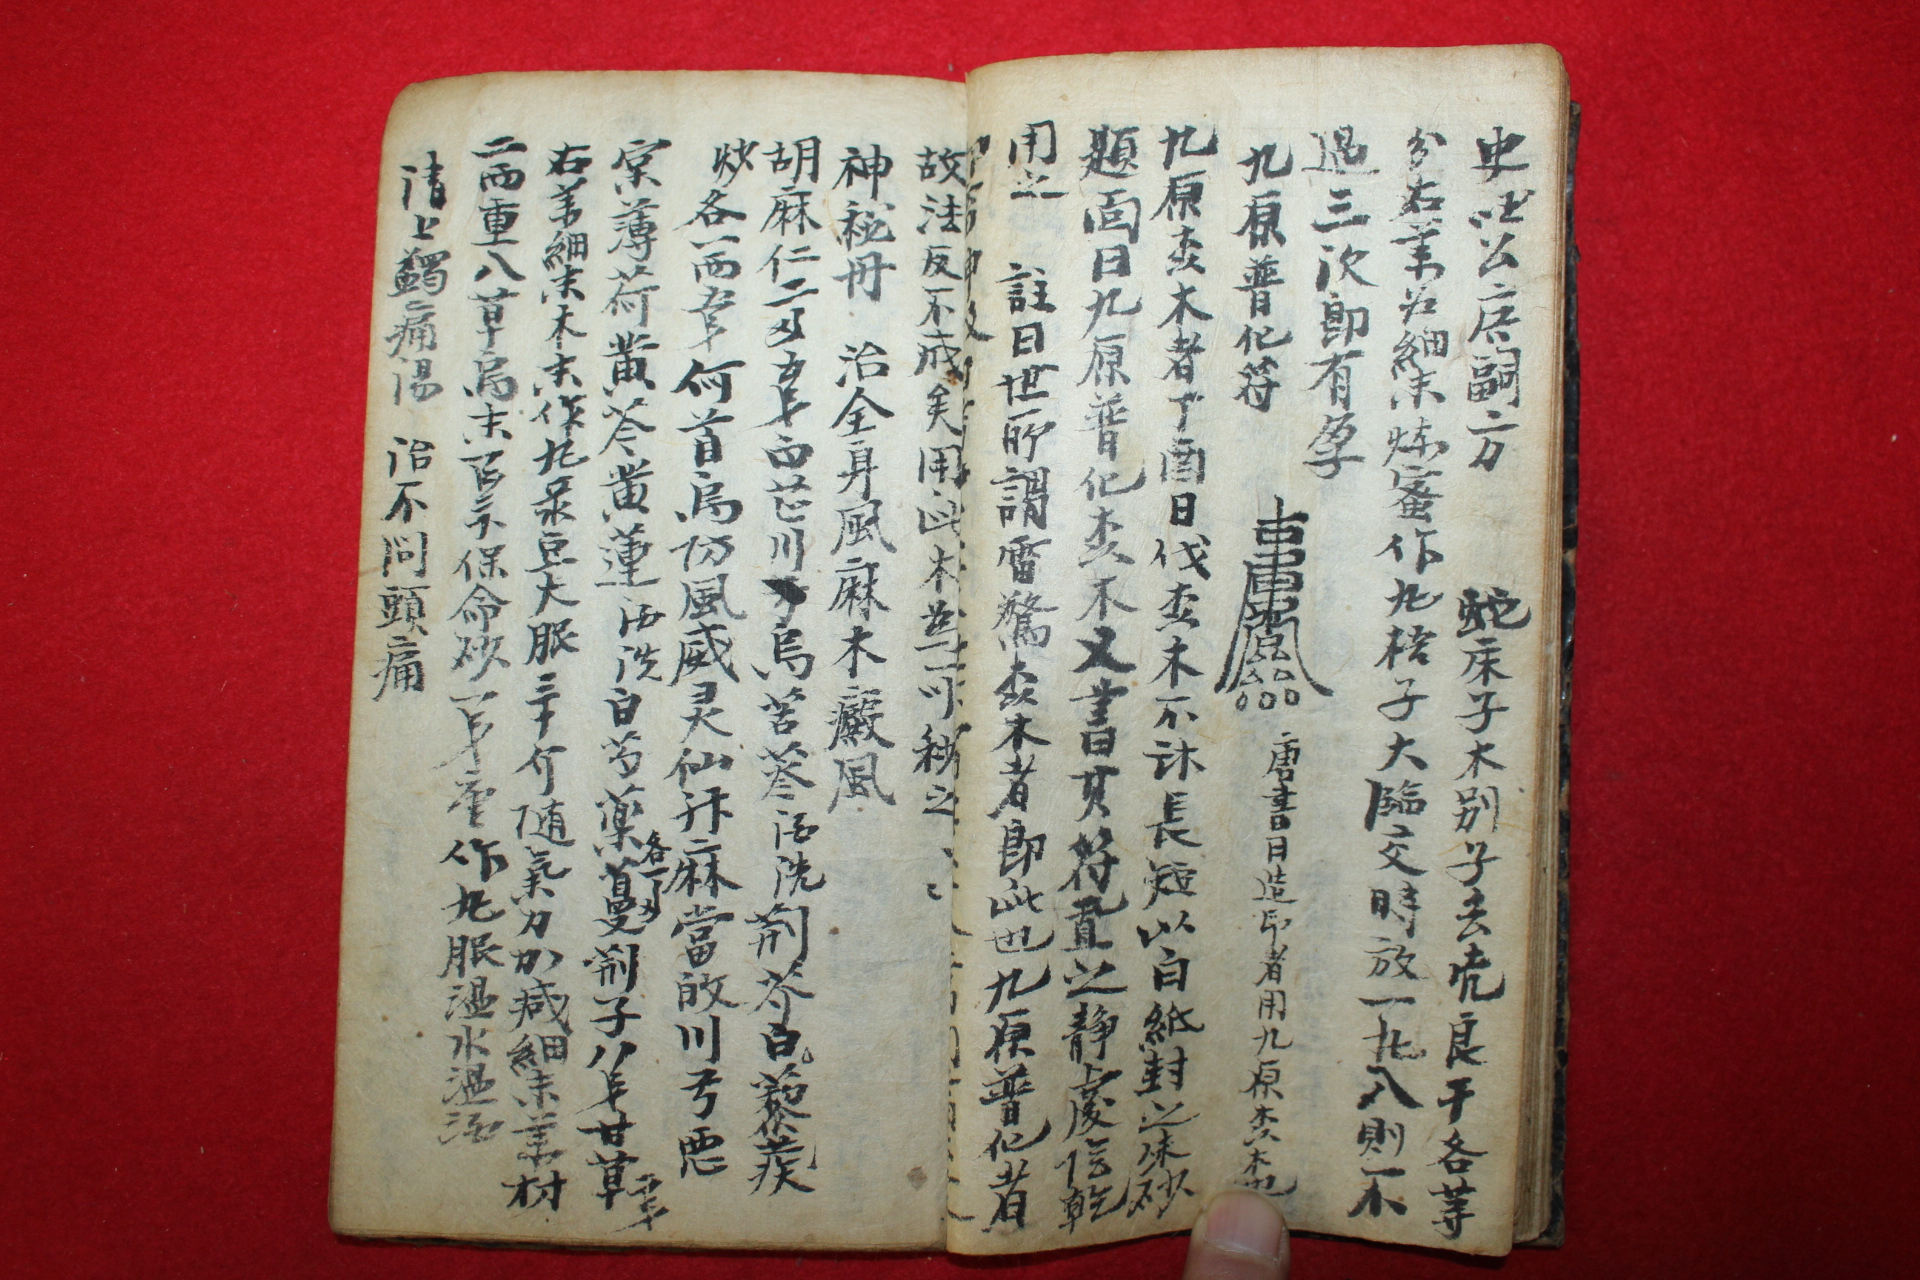 조선시대 희귀고필사본 청마방(靑馬方)